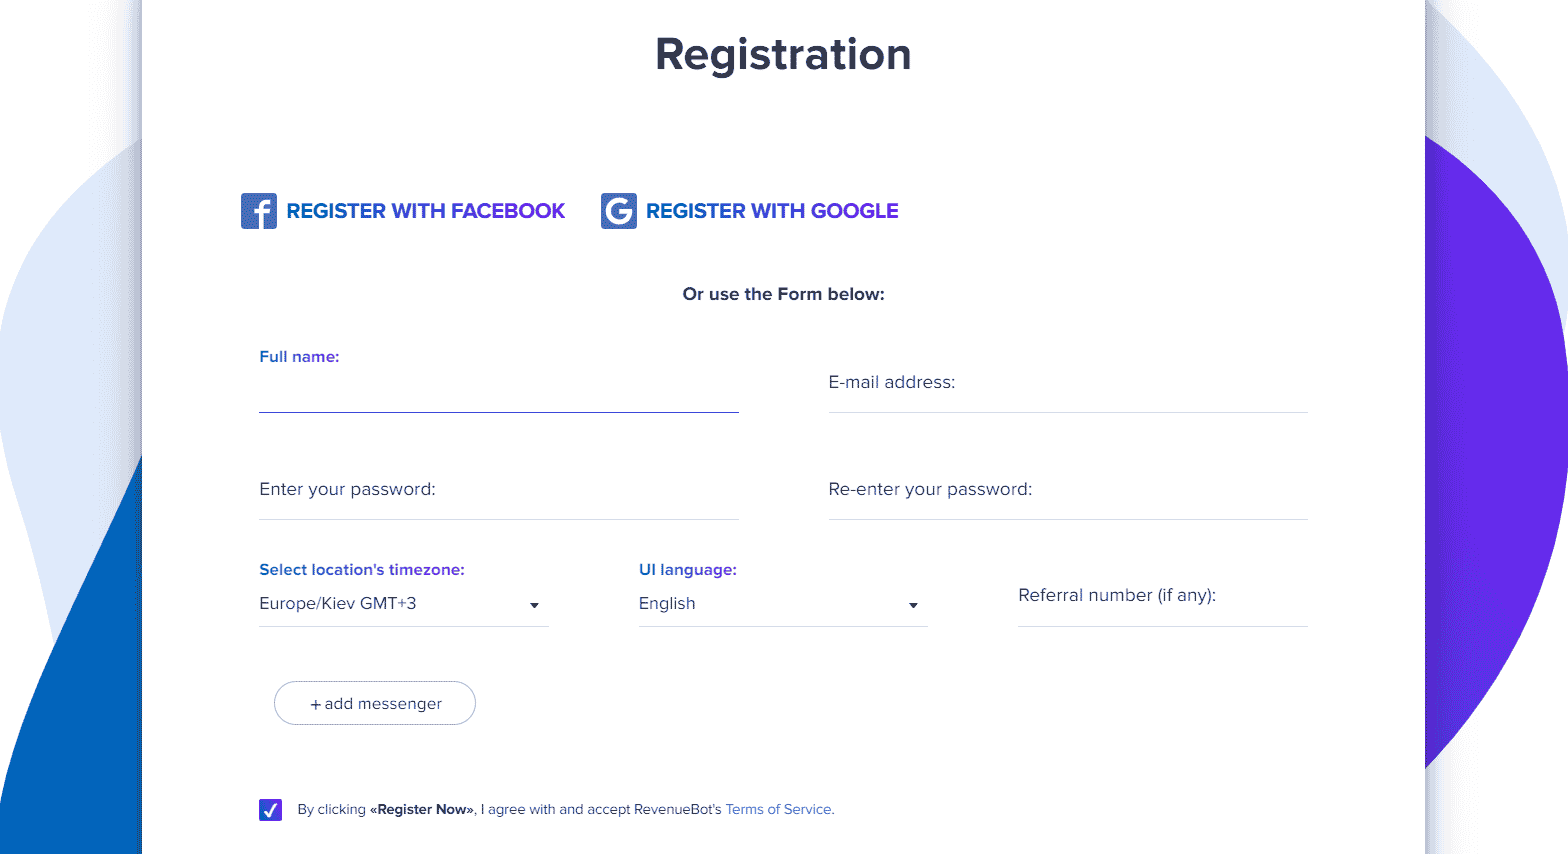 The online registration form